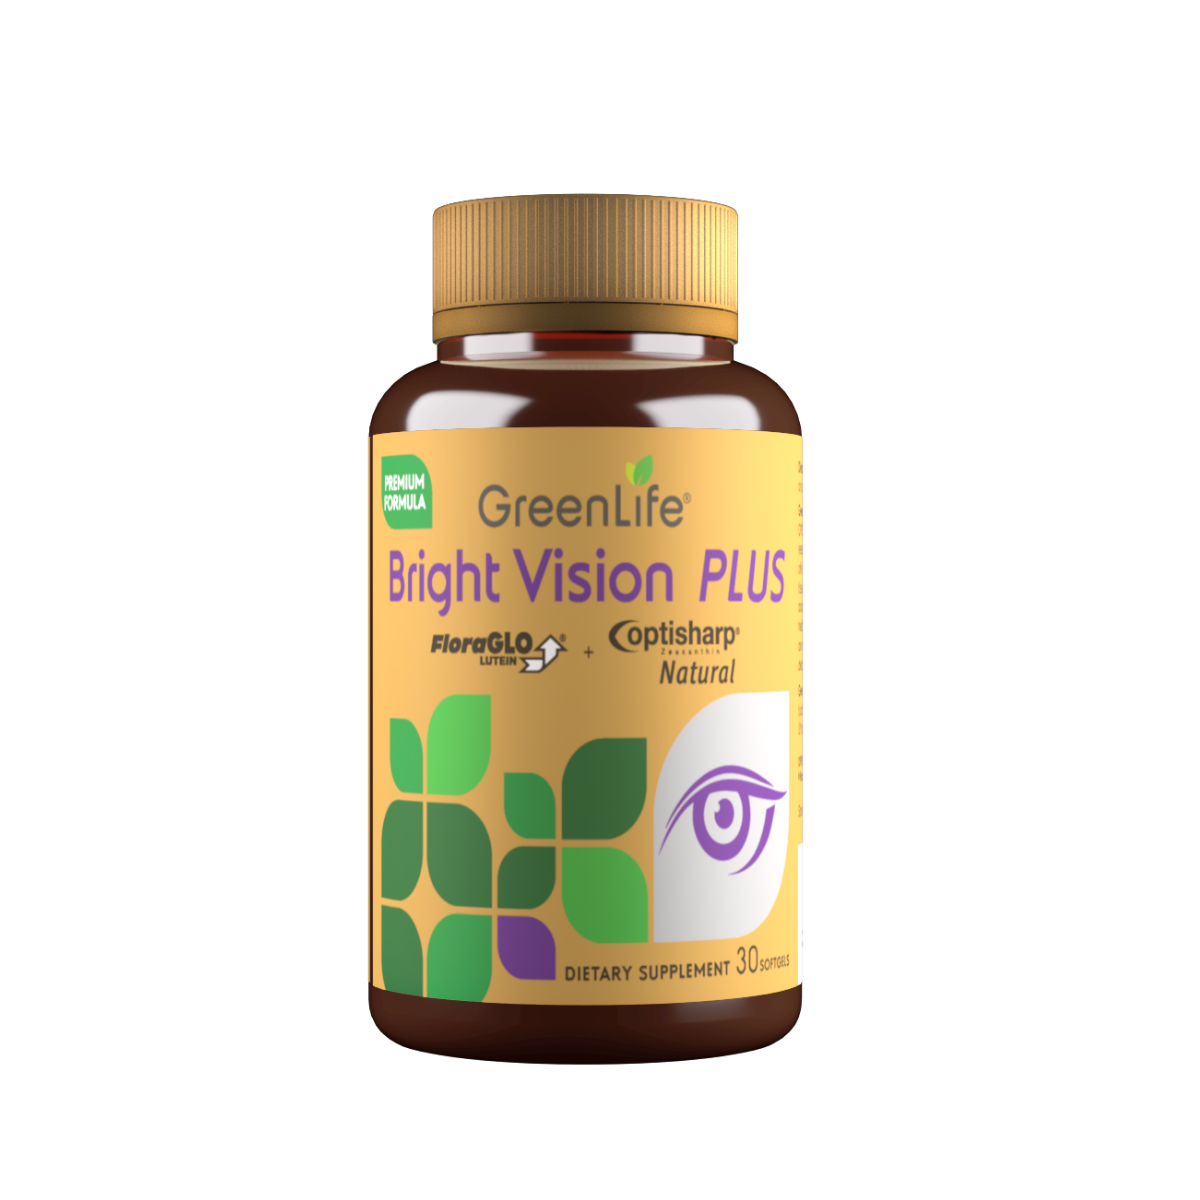 Bright Vision Plus